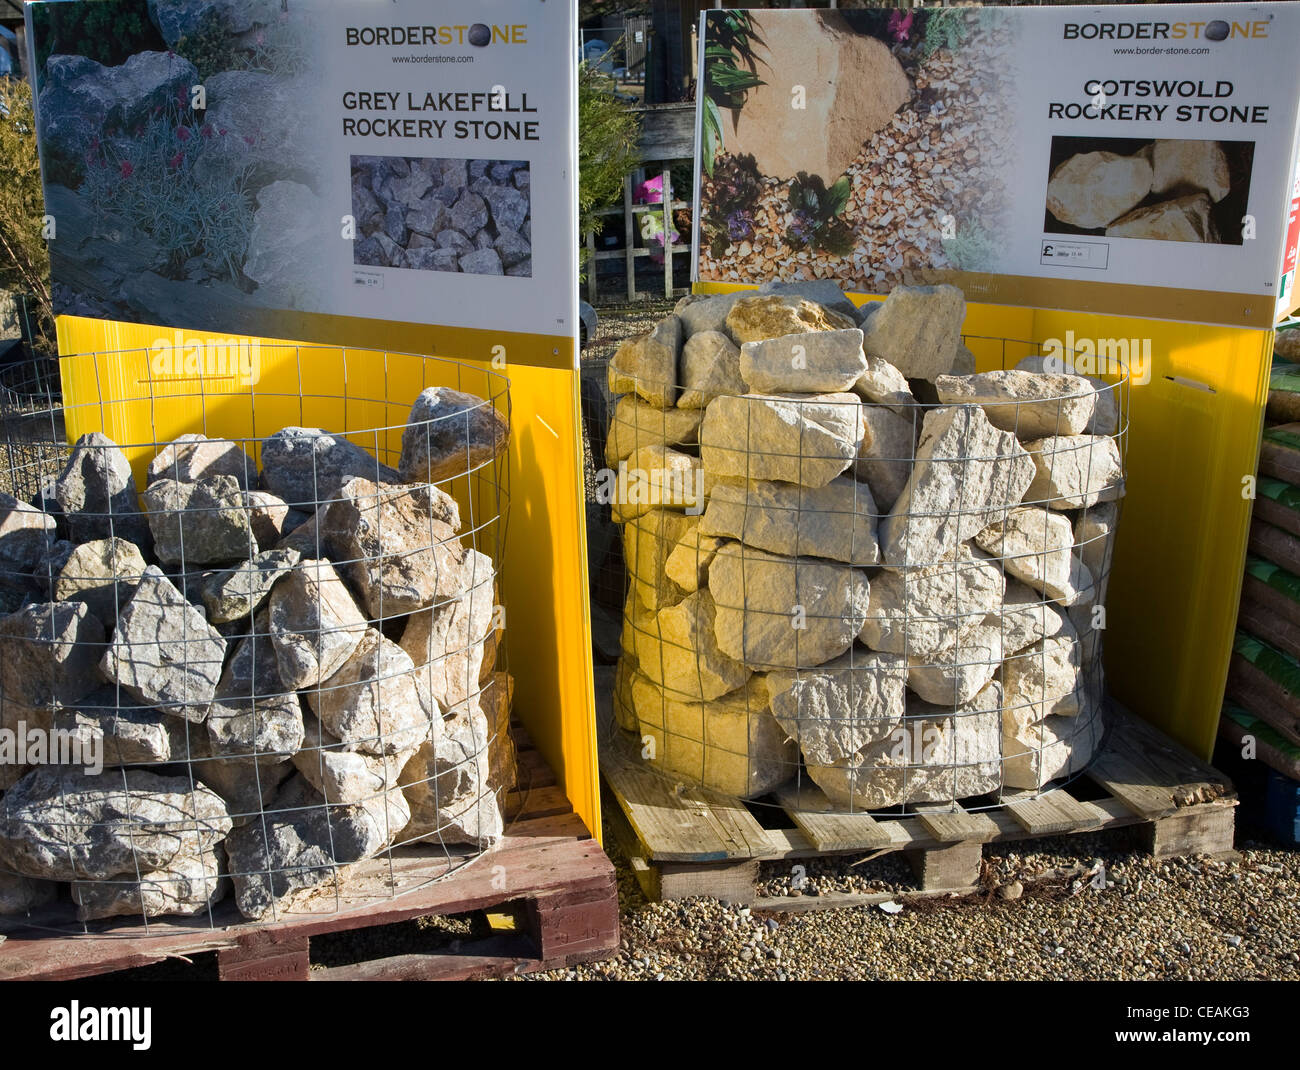 Stone Rocks For Garden Rockery On Sale Stock Photo 43260787 Alamy